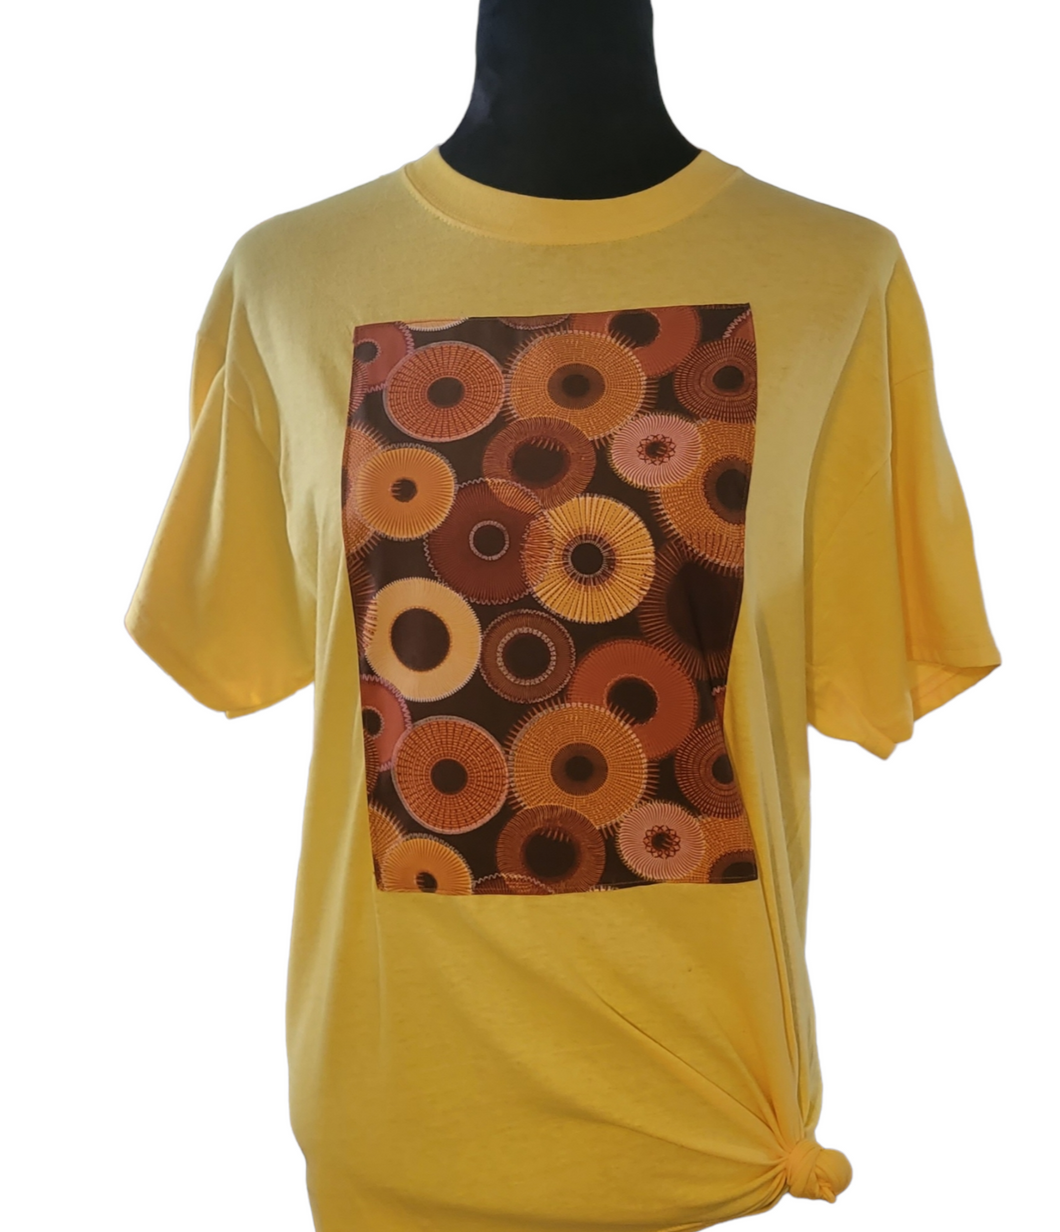 Ankara Fabric Yellow T-Shirt with Orange and Brown Swirls